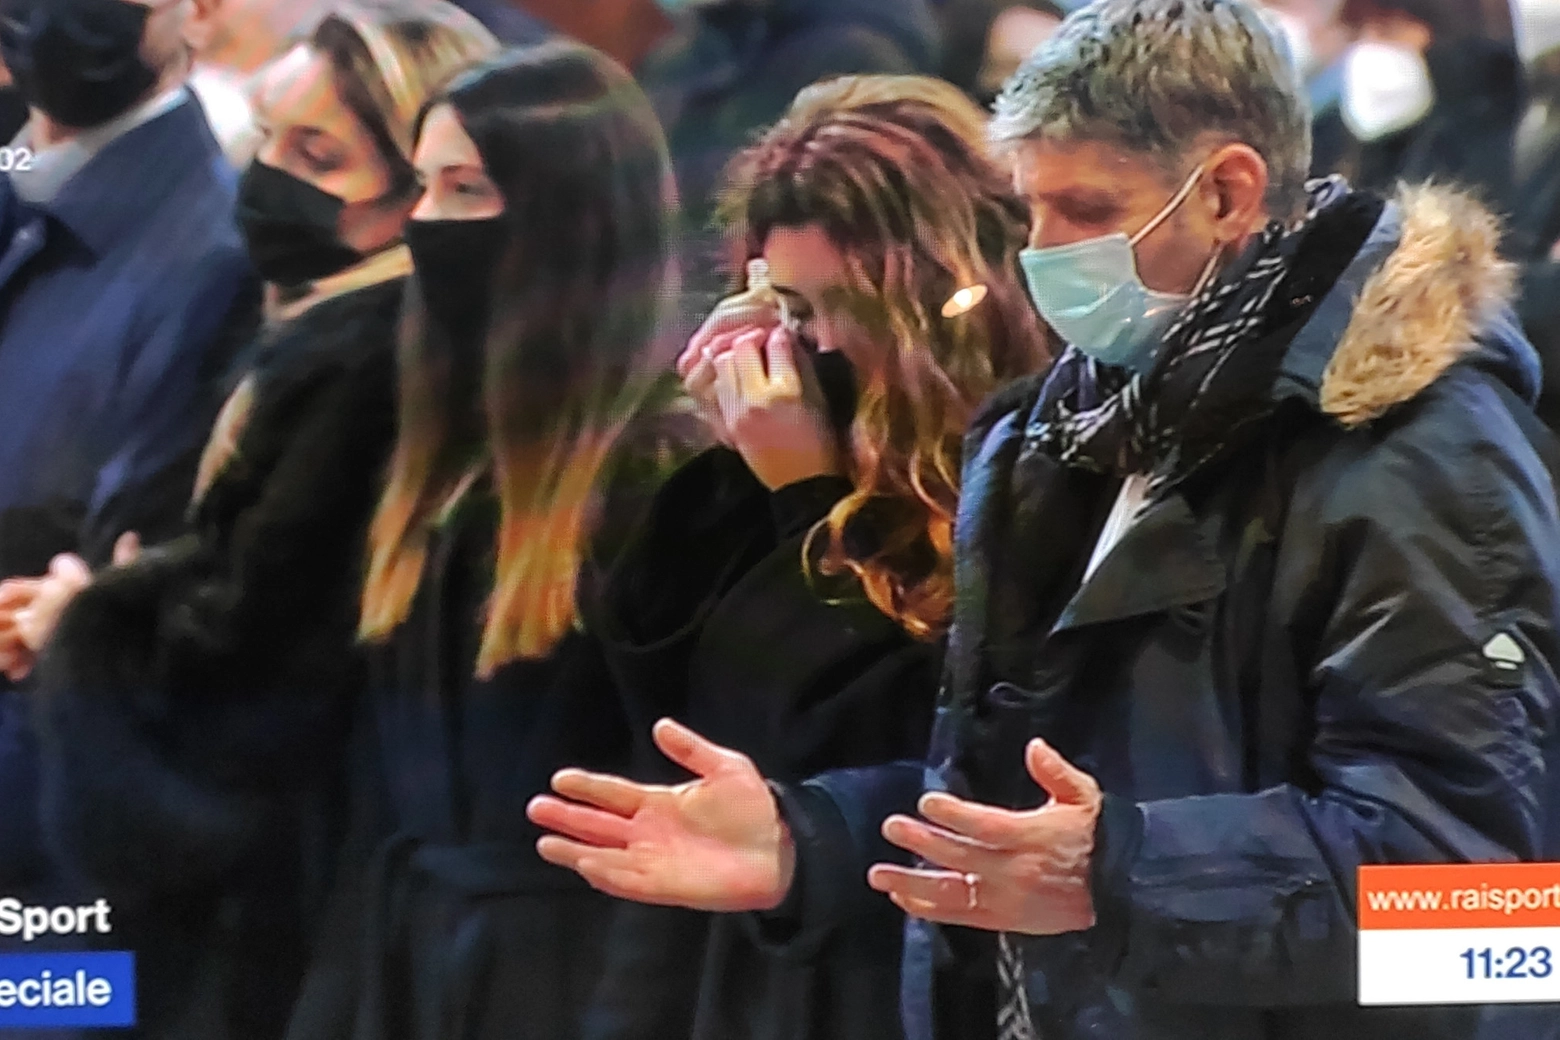 Rossano, fratello di Paolo Rossi, durante il funerale